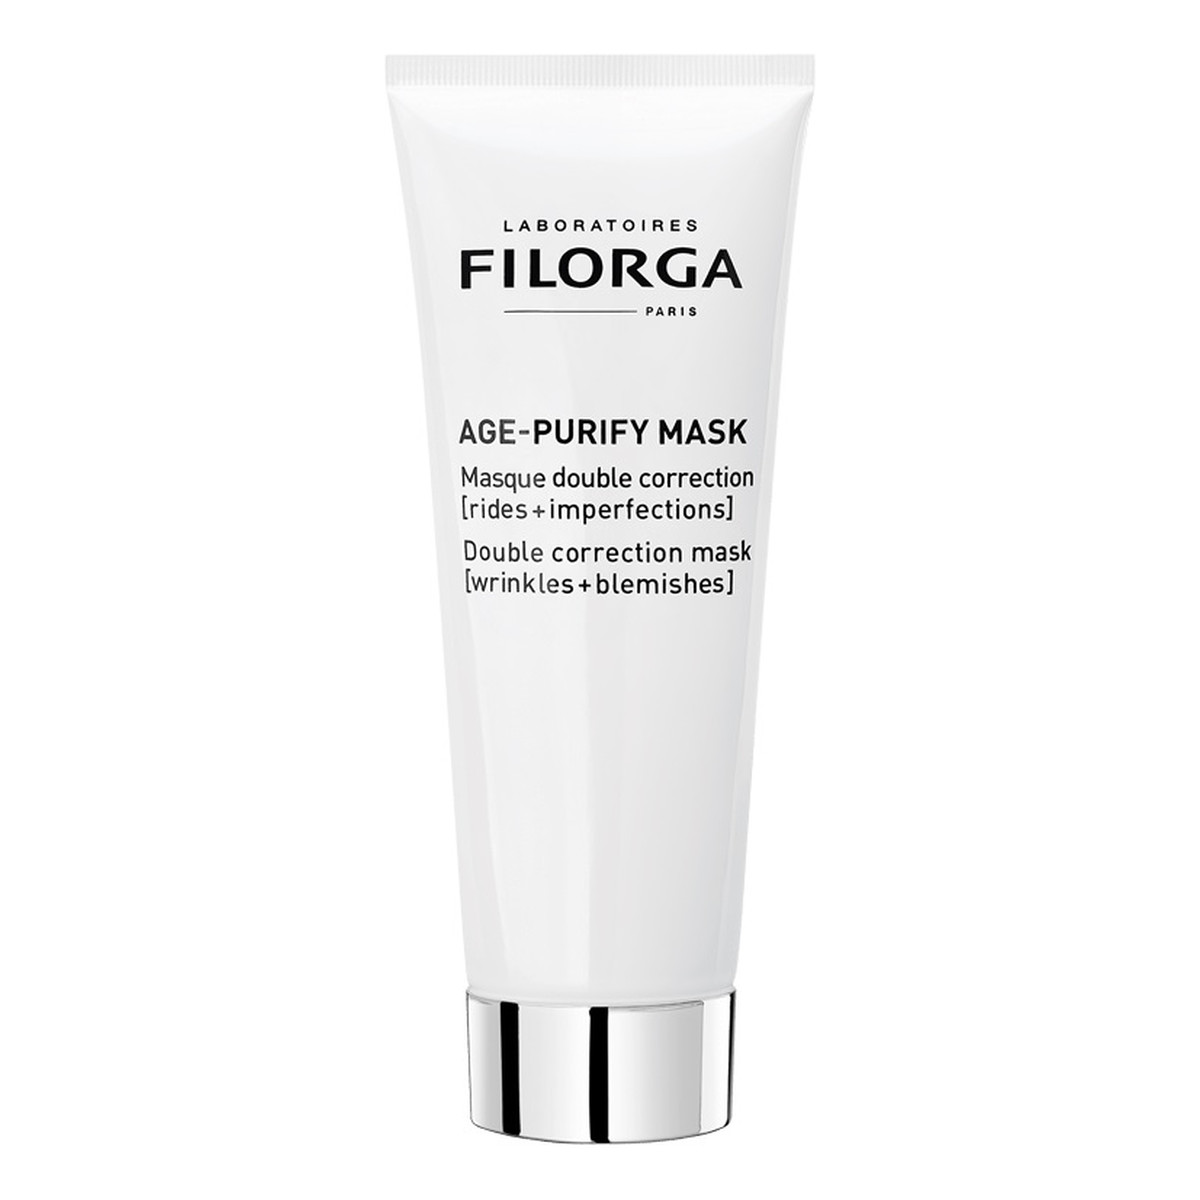 Filorga Age-purify mask odmładzająca maseczka do twarzy 75ml